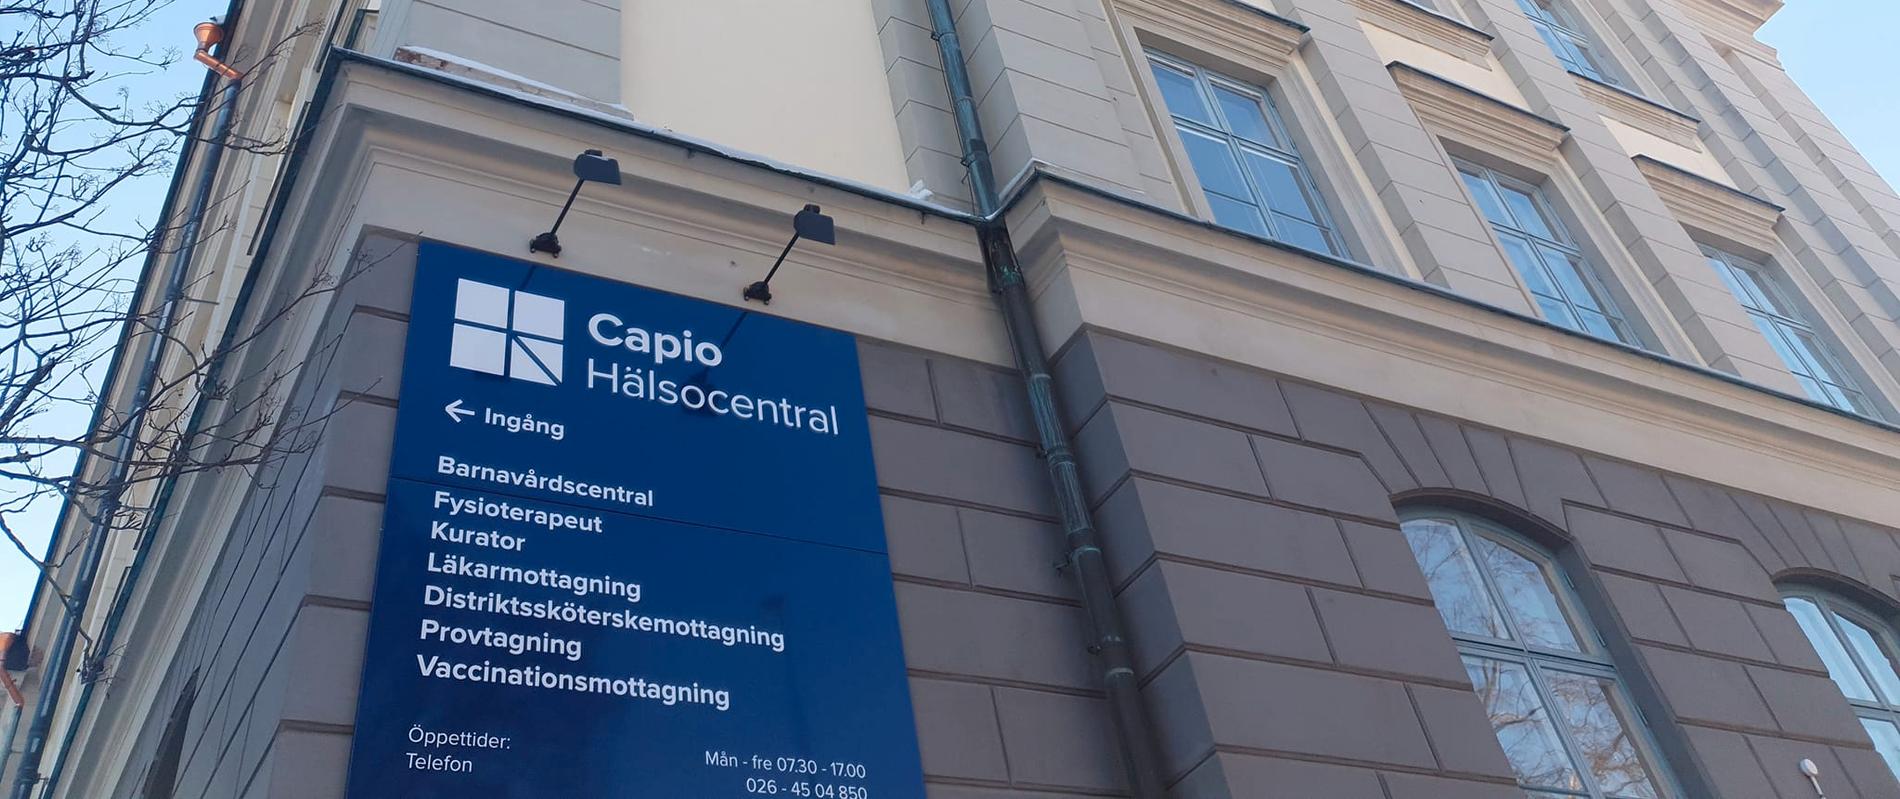 Vårdbolaget Capio driver ett hundratal sjukhus, specialistkliniker och vårdcentraler i Sverige.